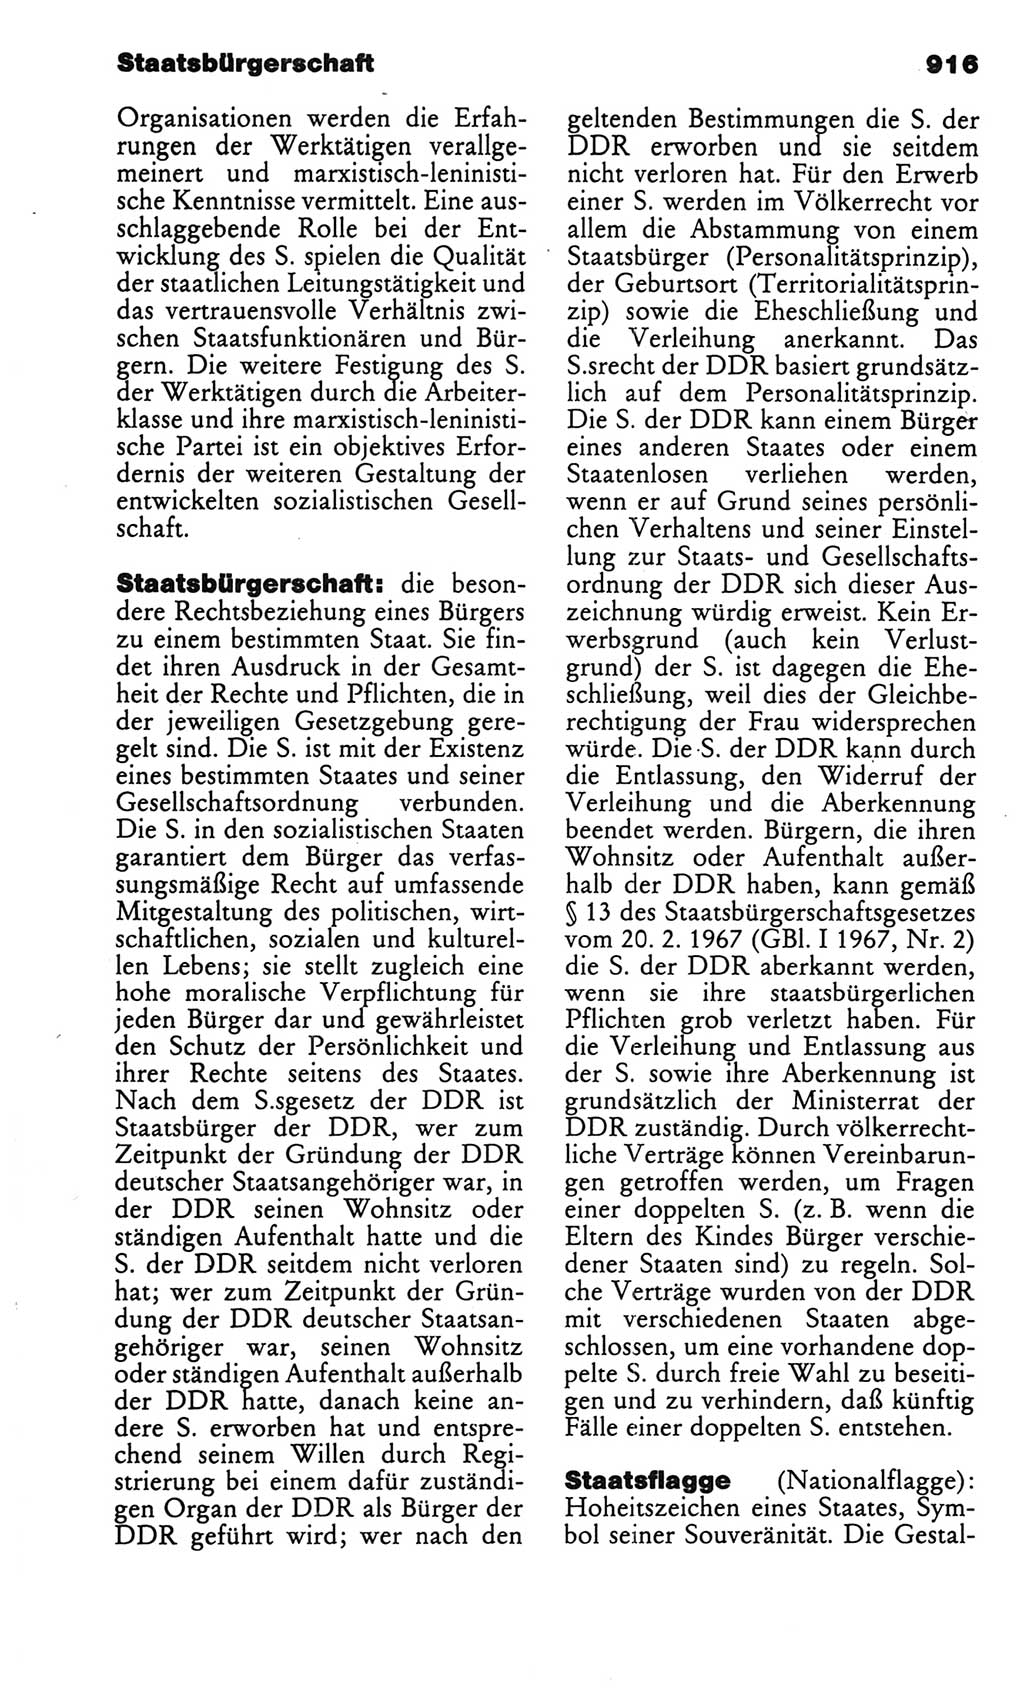 Kleines politisches Wörterbuch [Deutsche Demokratische Republik (DDR)] 1986, Seite 916 (Kl. pol. Wb. DDR 1986, S. 916)